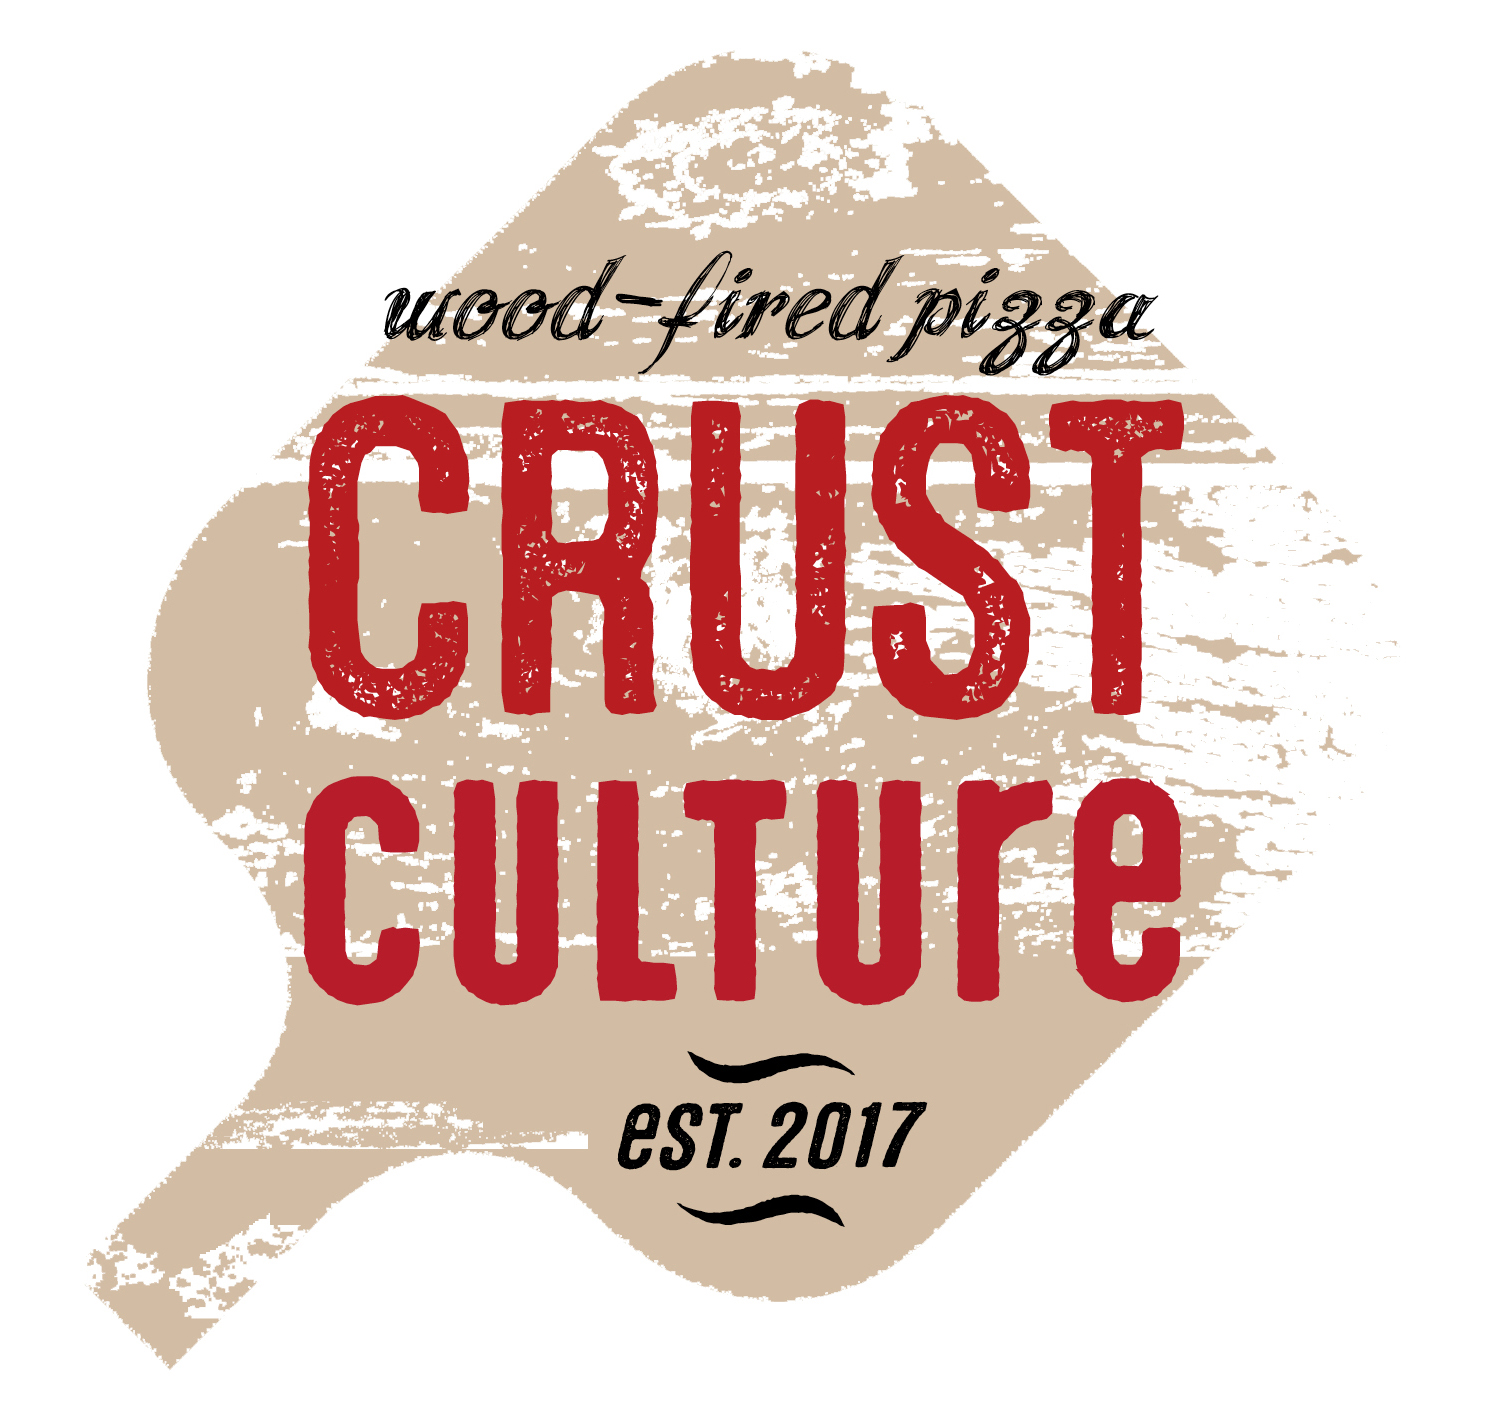 Crust Culture